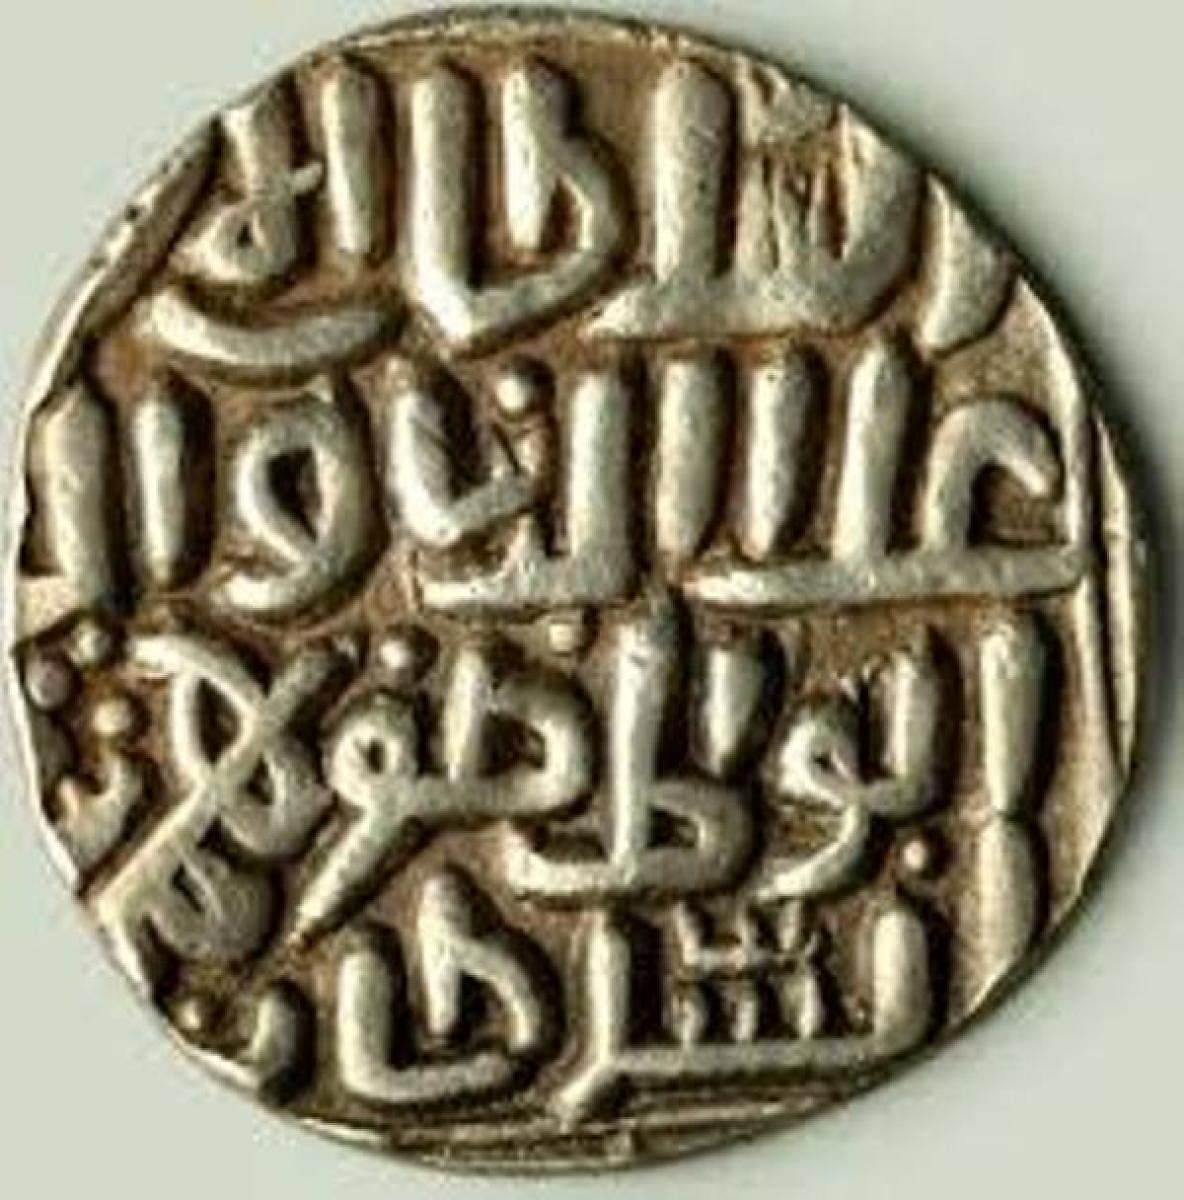 Coins - Bahmani